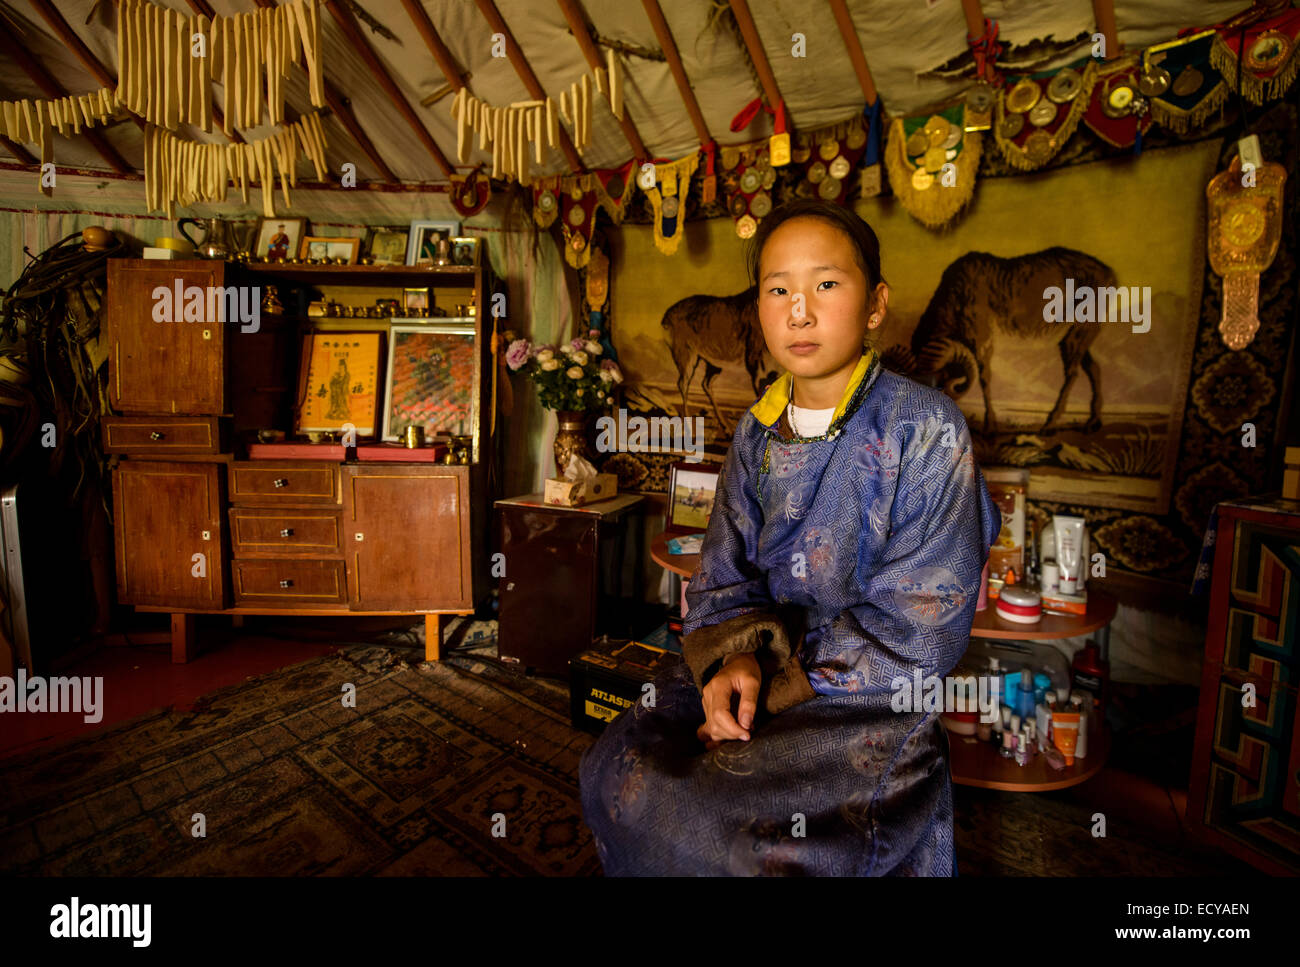 L'intérieur de son nomad mongol ger, Mongolie Banque D'Images